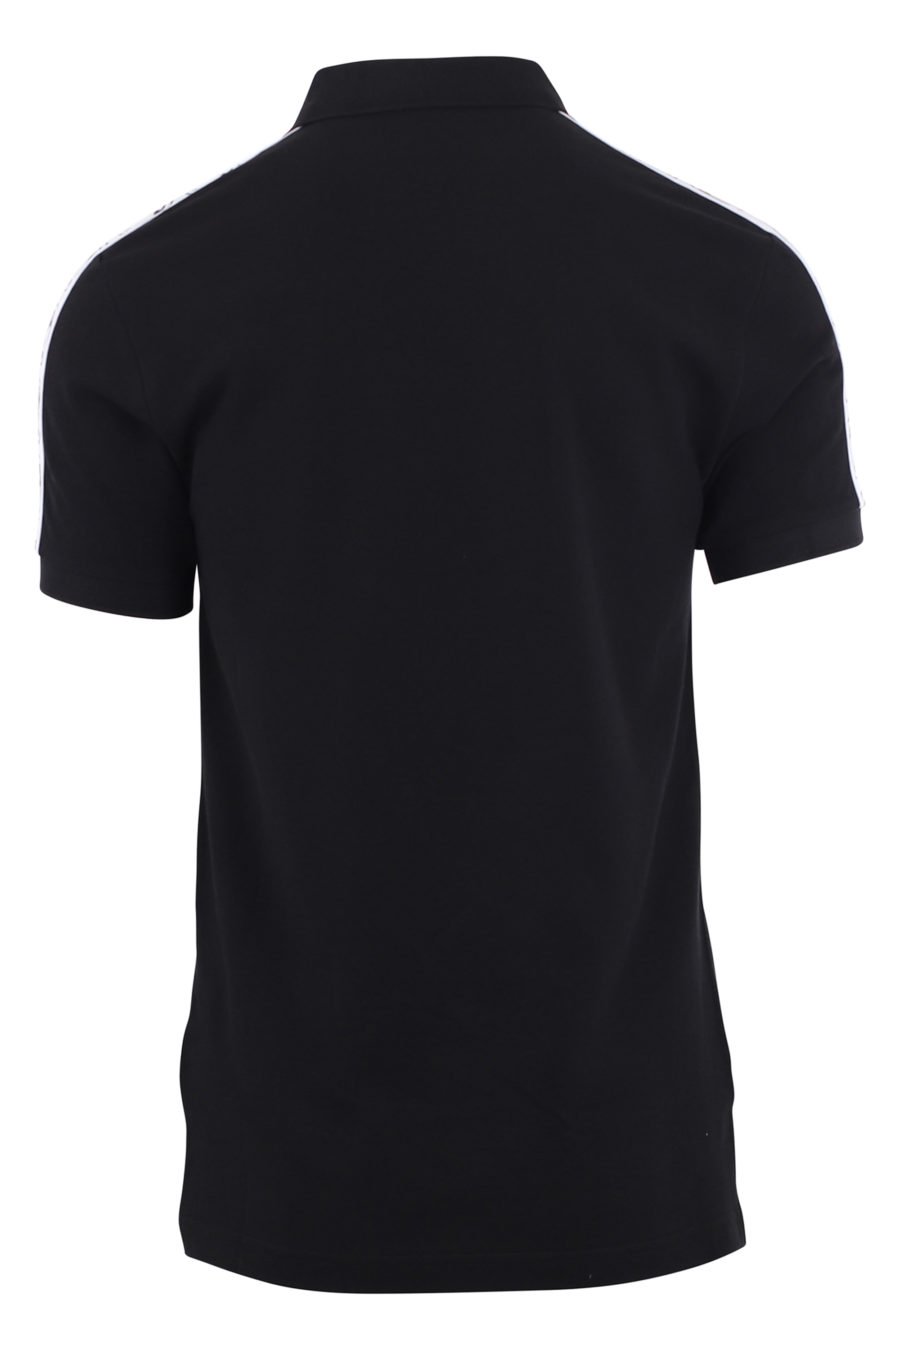 Schwarzes Poloshirt mit Doppelfrage-Logo und Ärmelband - IMG 9685